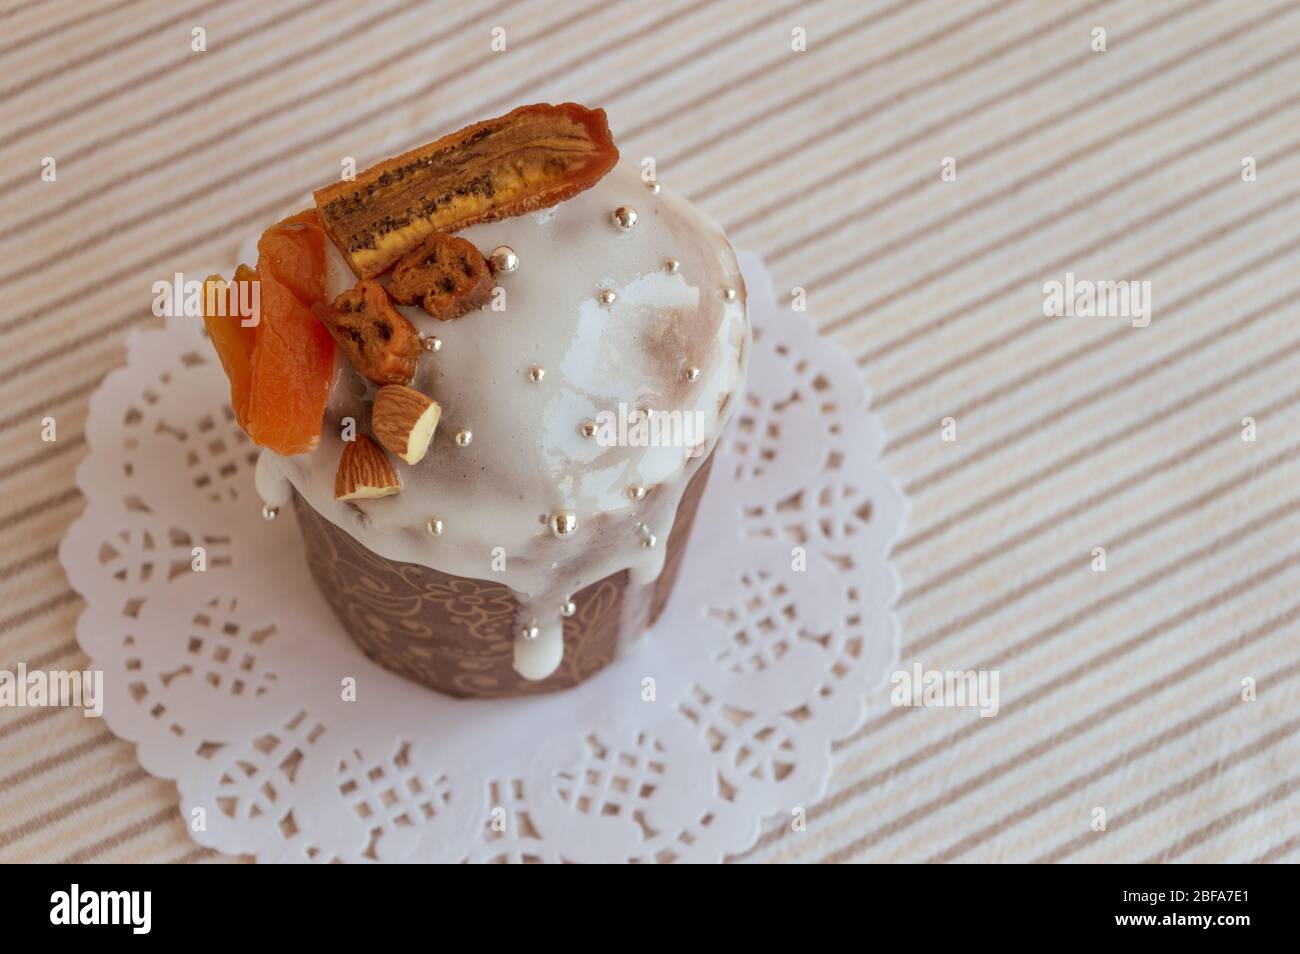 Vue sur le kulich traditionnel orthodoxe de Pâques. Délicieux gâteau élégant sur la serviette blanche avec des détails de coupe décorés de bananes séchées, abricots, Banque D'Images